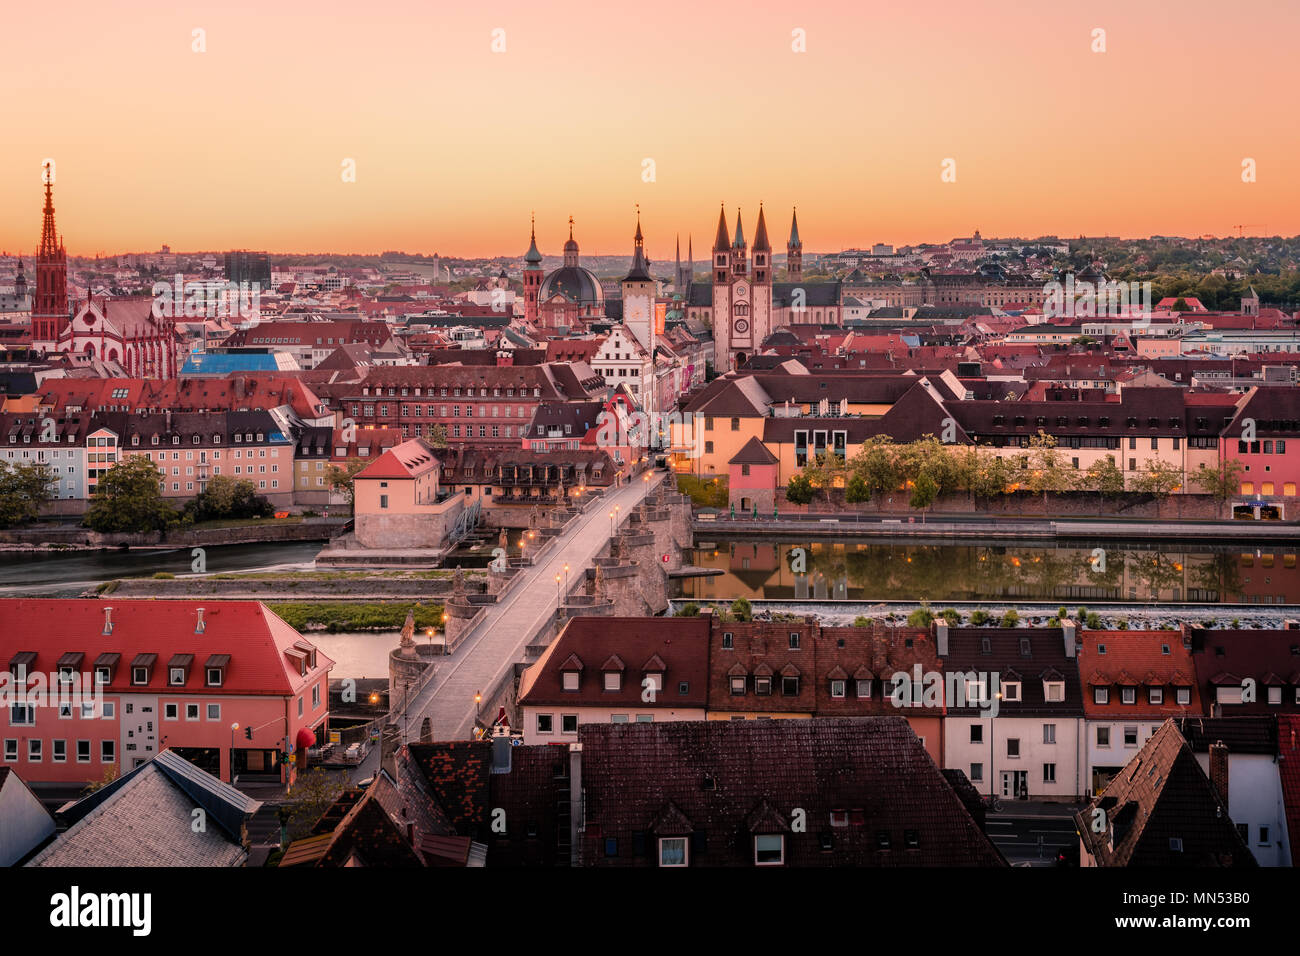 Landschaftlich atemberaubende Sommer Antenne panorama Stadtbild der Altstadt Stadt in Würzburg, Bayern, Deutschland - Teil der Romantischen Straße. Stockfoto